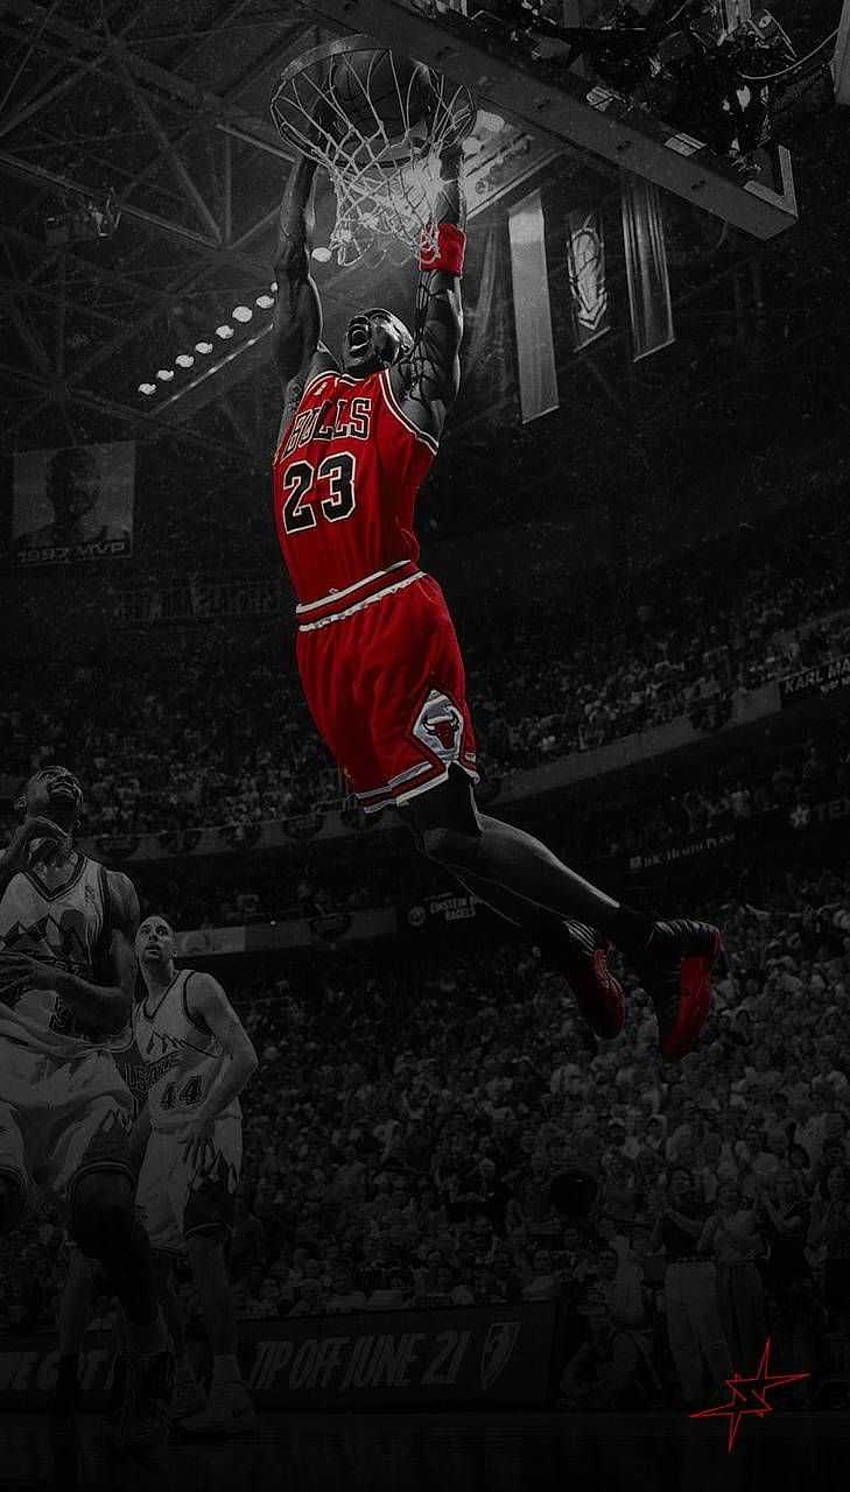 Download Kobe Bryant competing with Michael Jordan Wallpaper | Wallpapers .com